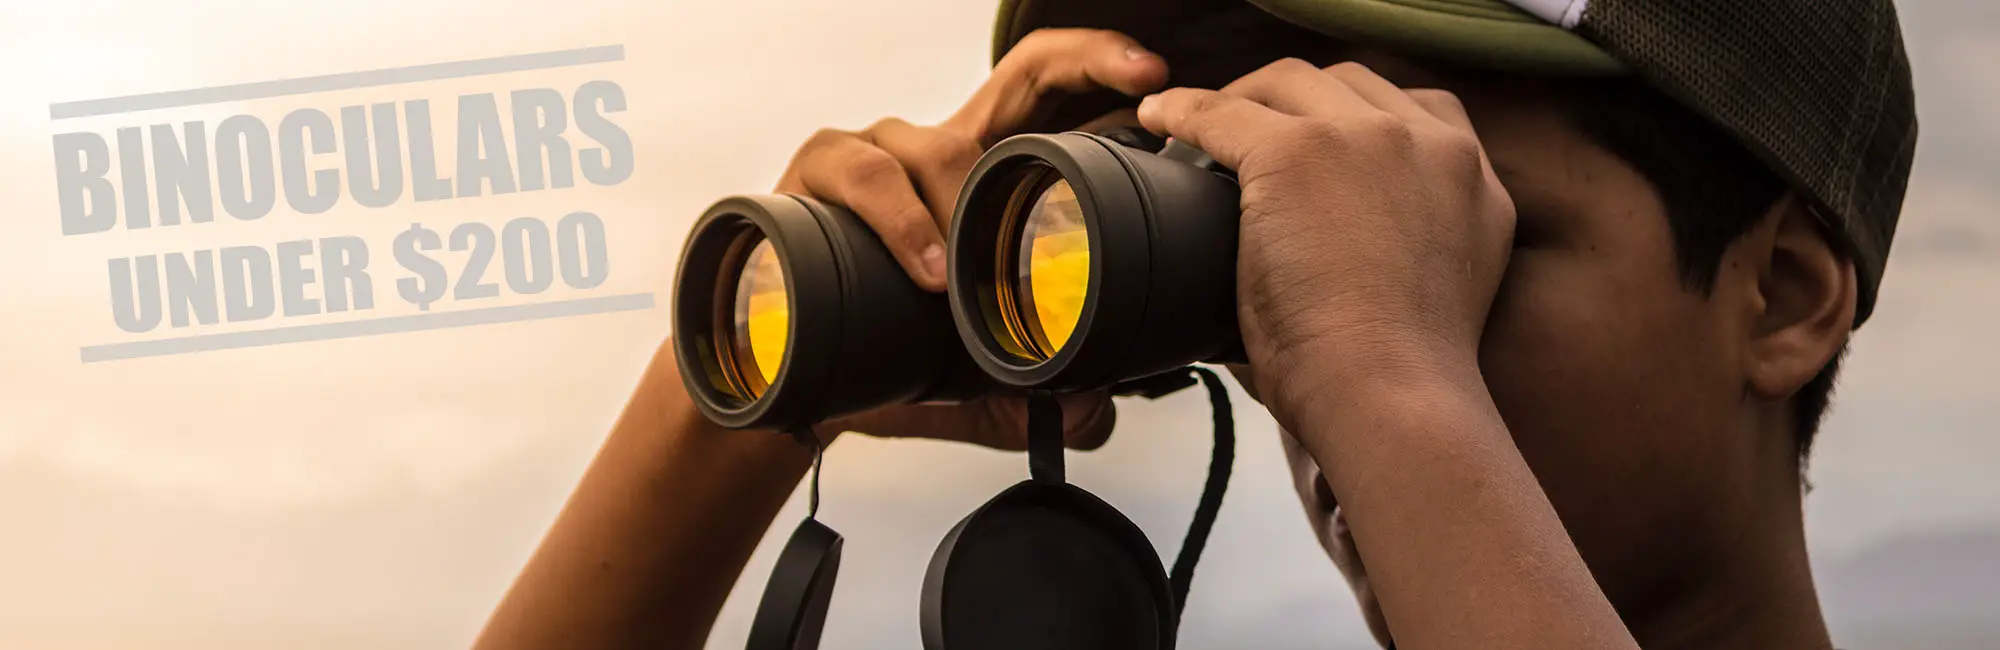 Best binoculars under 200 - header